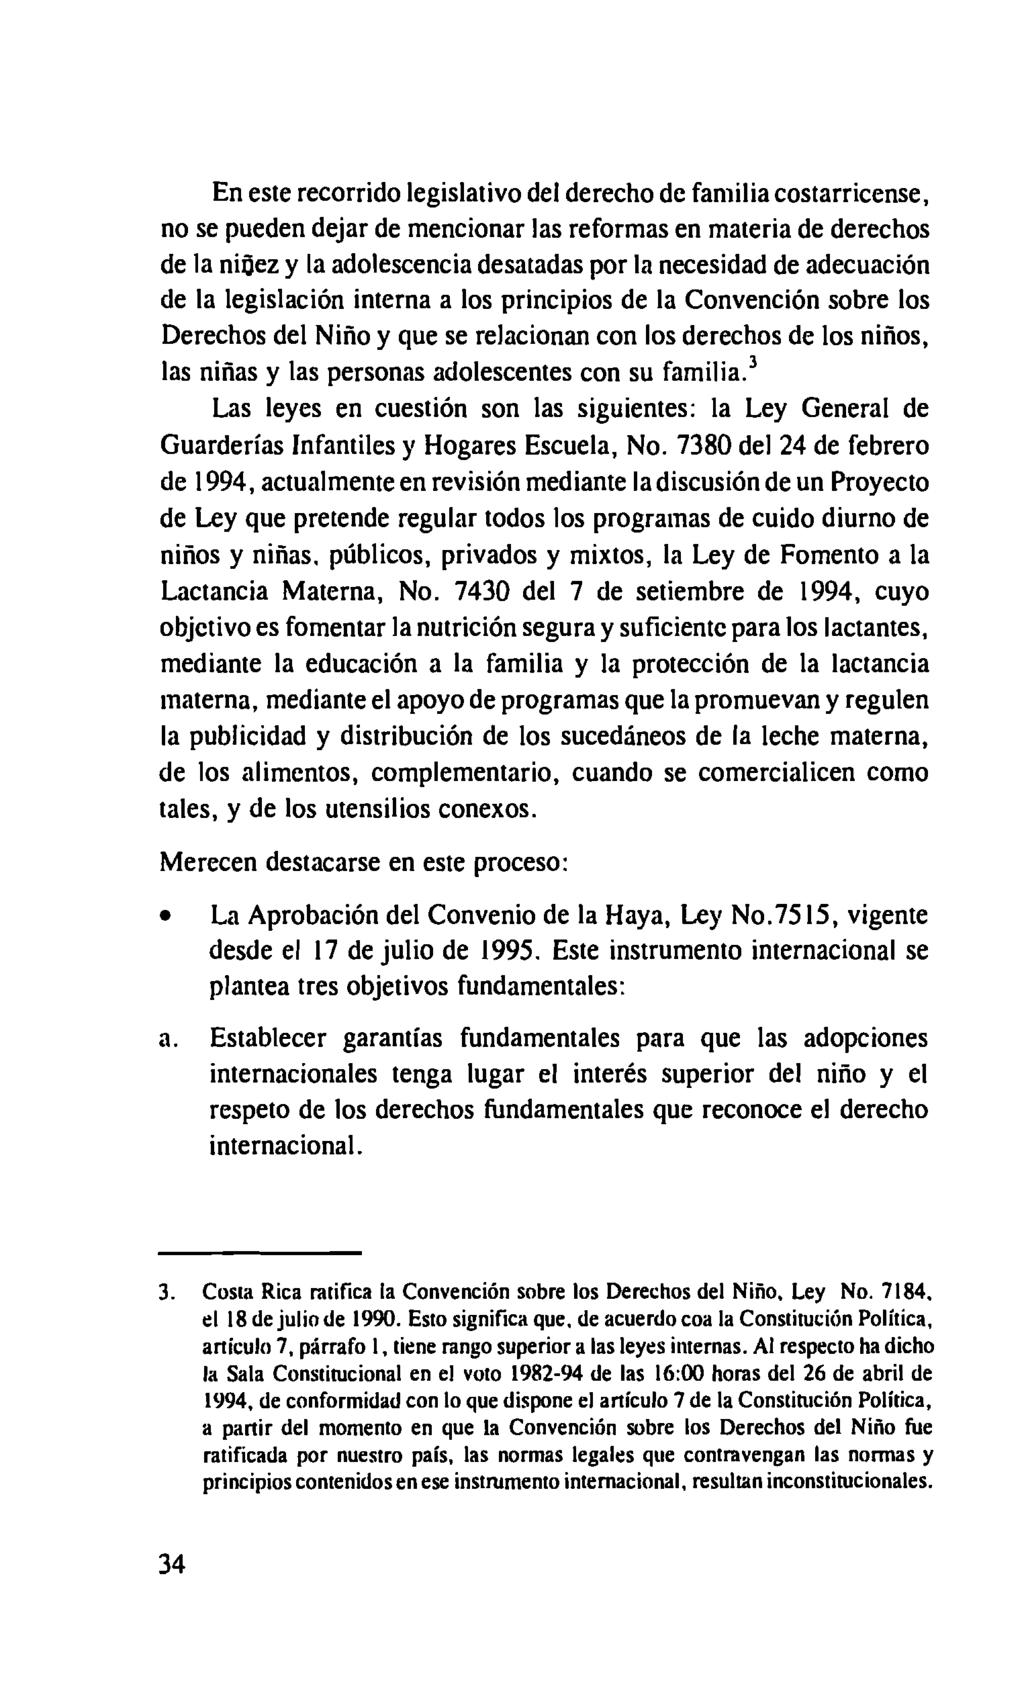 En este recorrido legislativo del derecho de familia costarricense, no se pueden dejar de mencionar las reformas en materia de derechos de la niñez y la adolescencia desatadas por la necesidad de